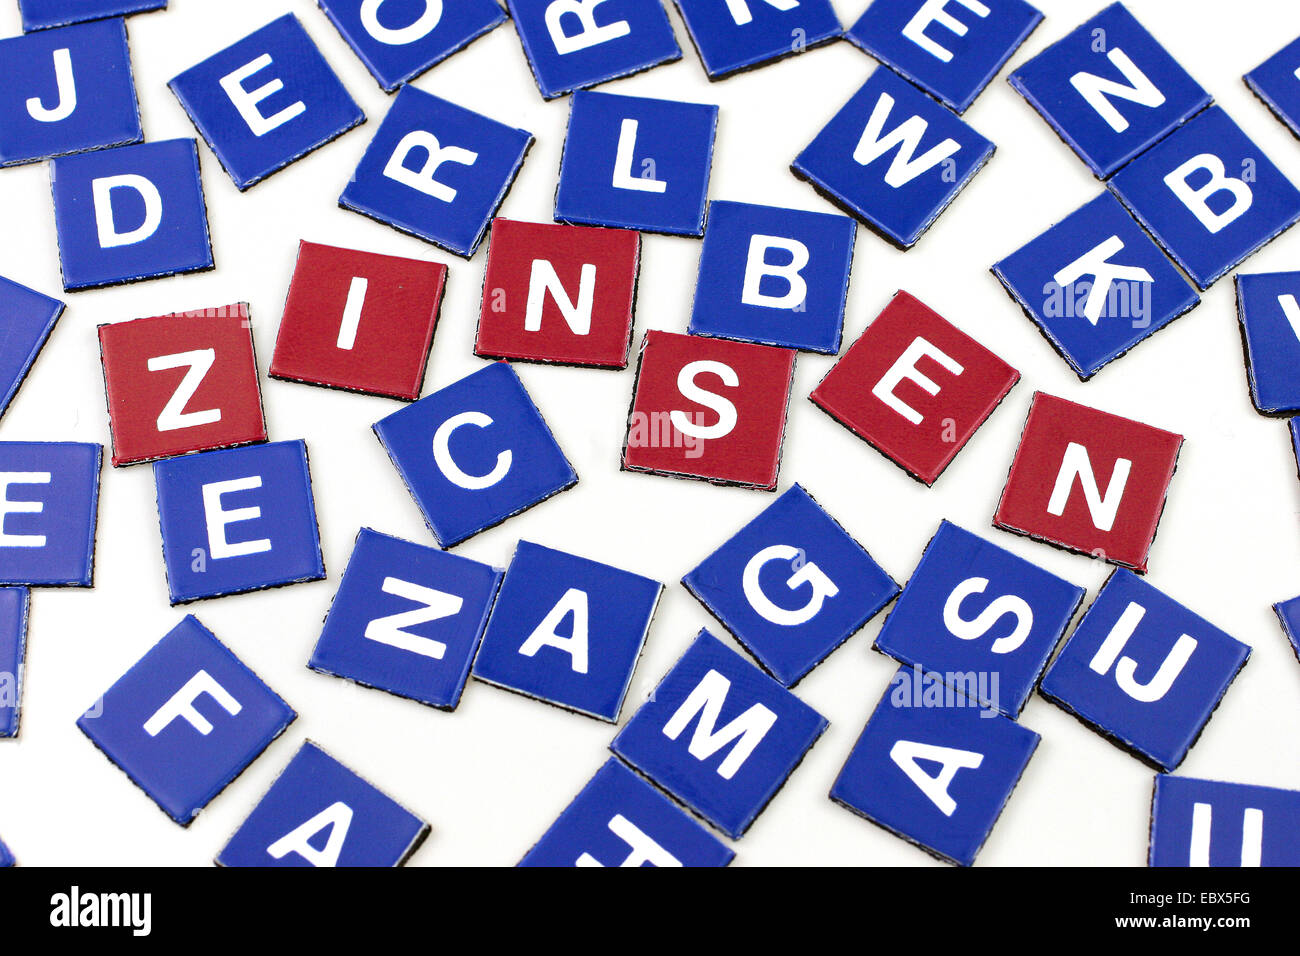 Les jetons de scrabble bleu, rouge celles formant le mot Zinsen, l'intérêt (financier). Banque D'Images